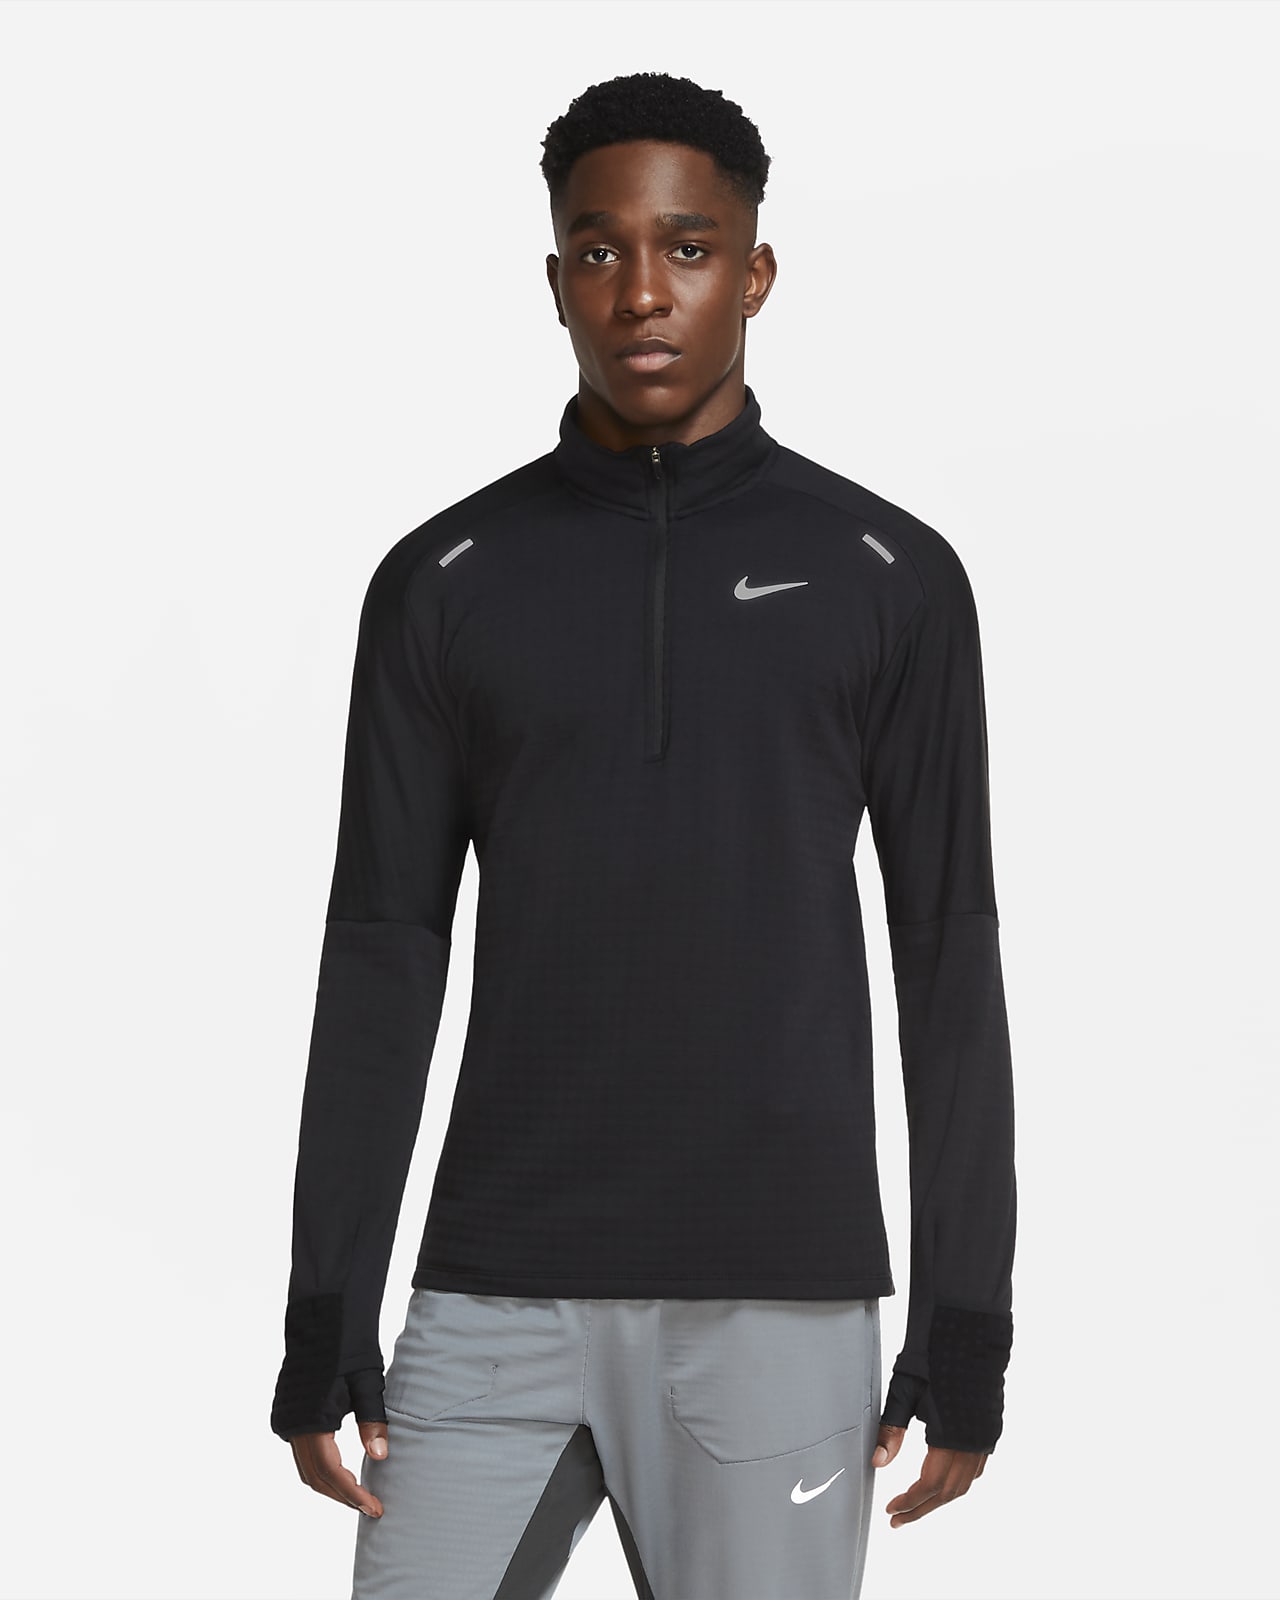 Maglia da running con zip a metà lunghezza Nike Sphere - Uomo